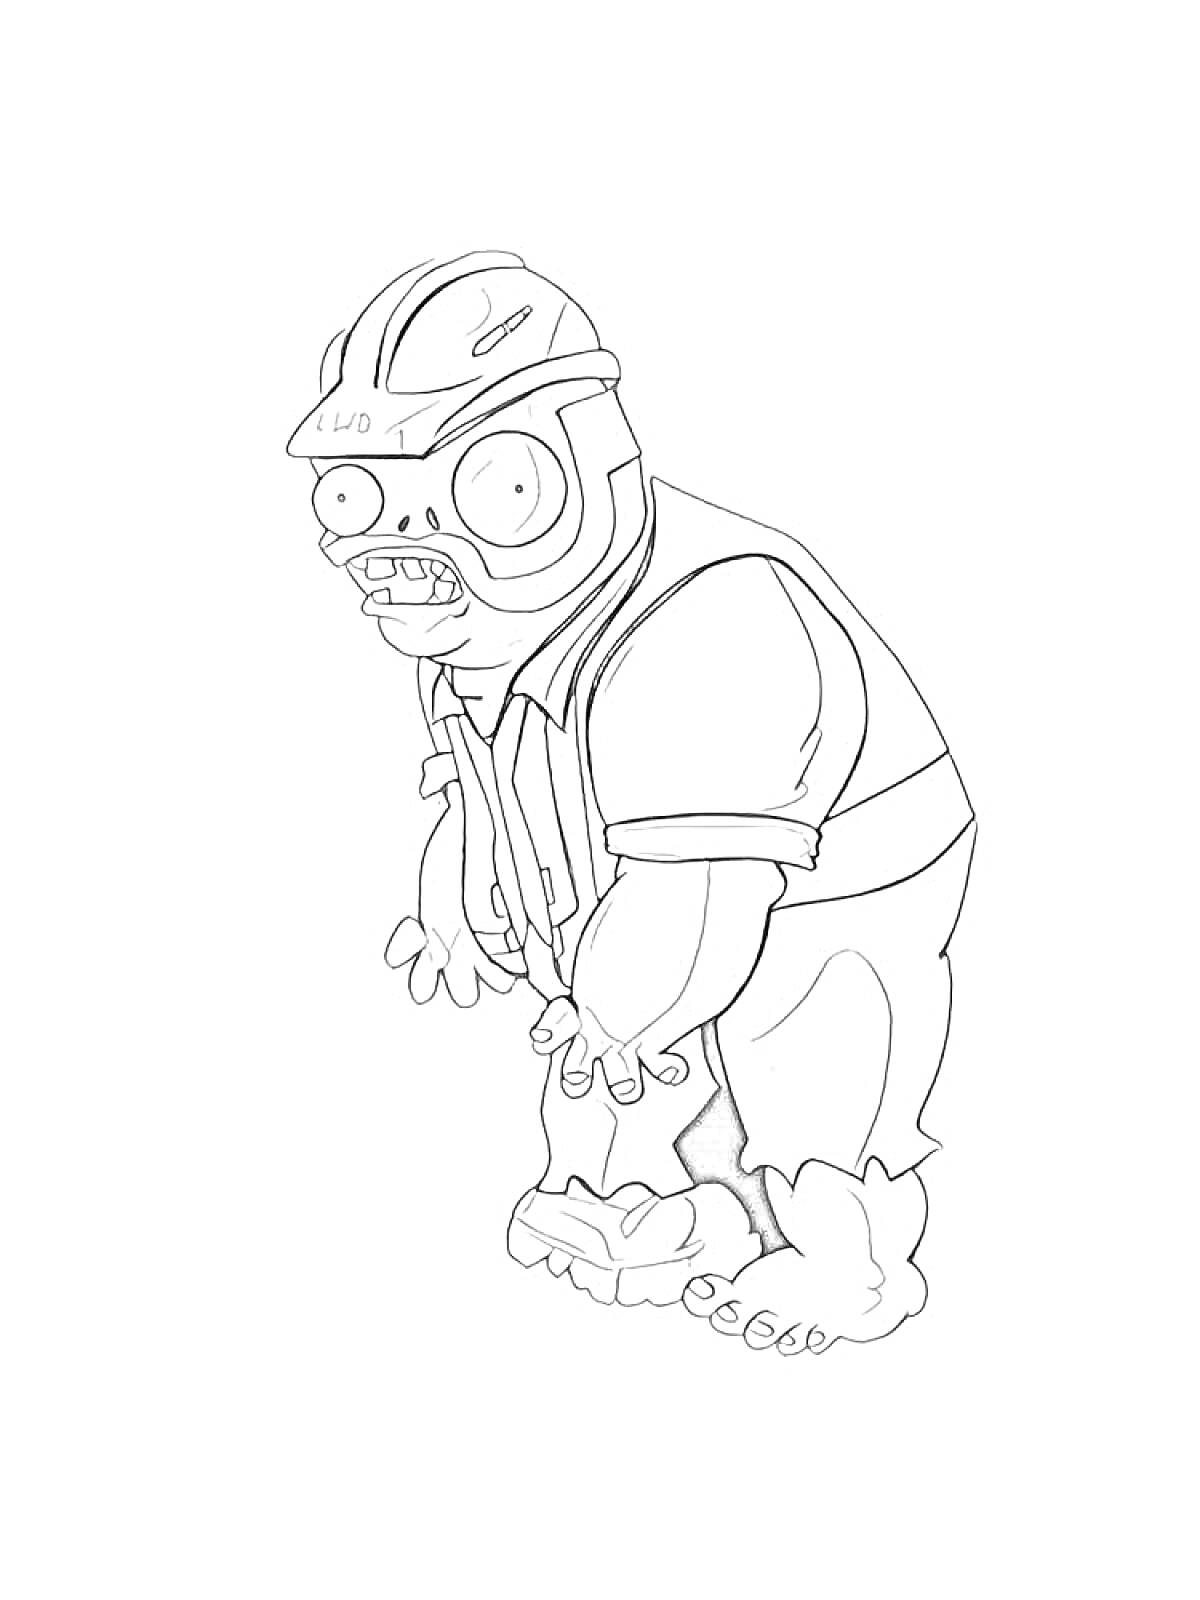 Раскраска Зомби в защитном шлеме и очках, с формой строителя